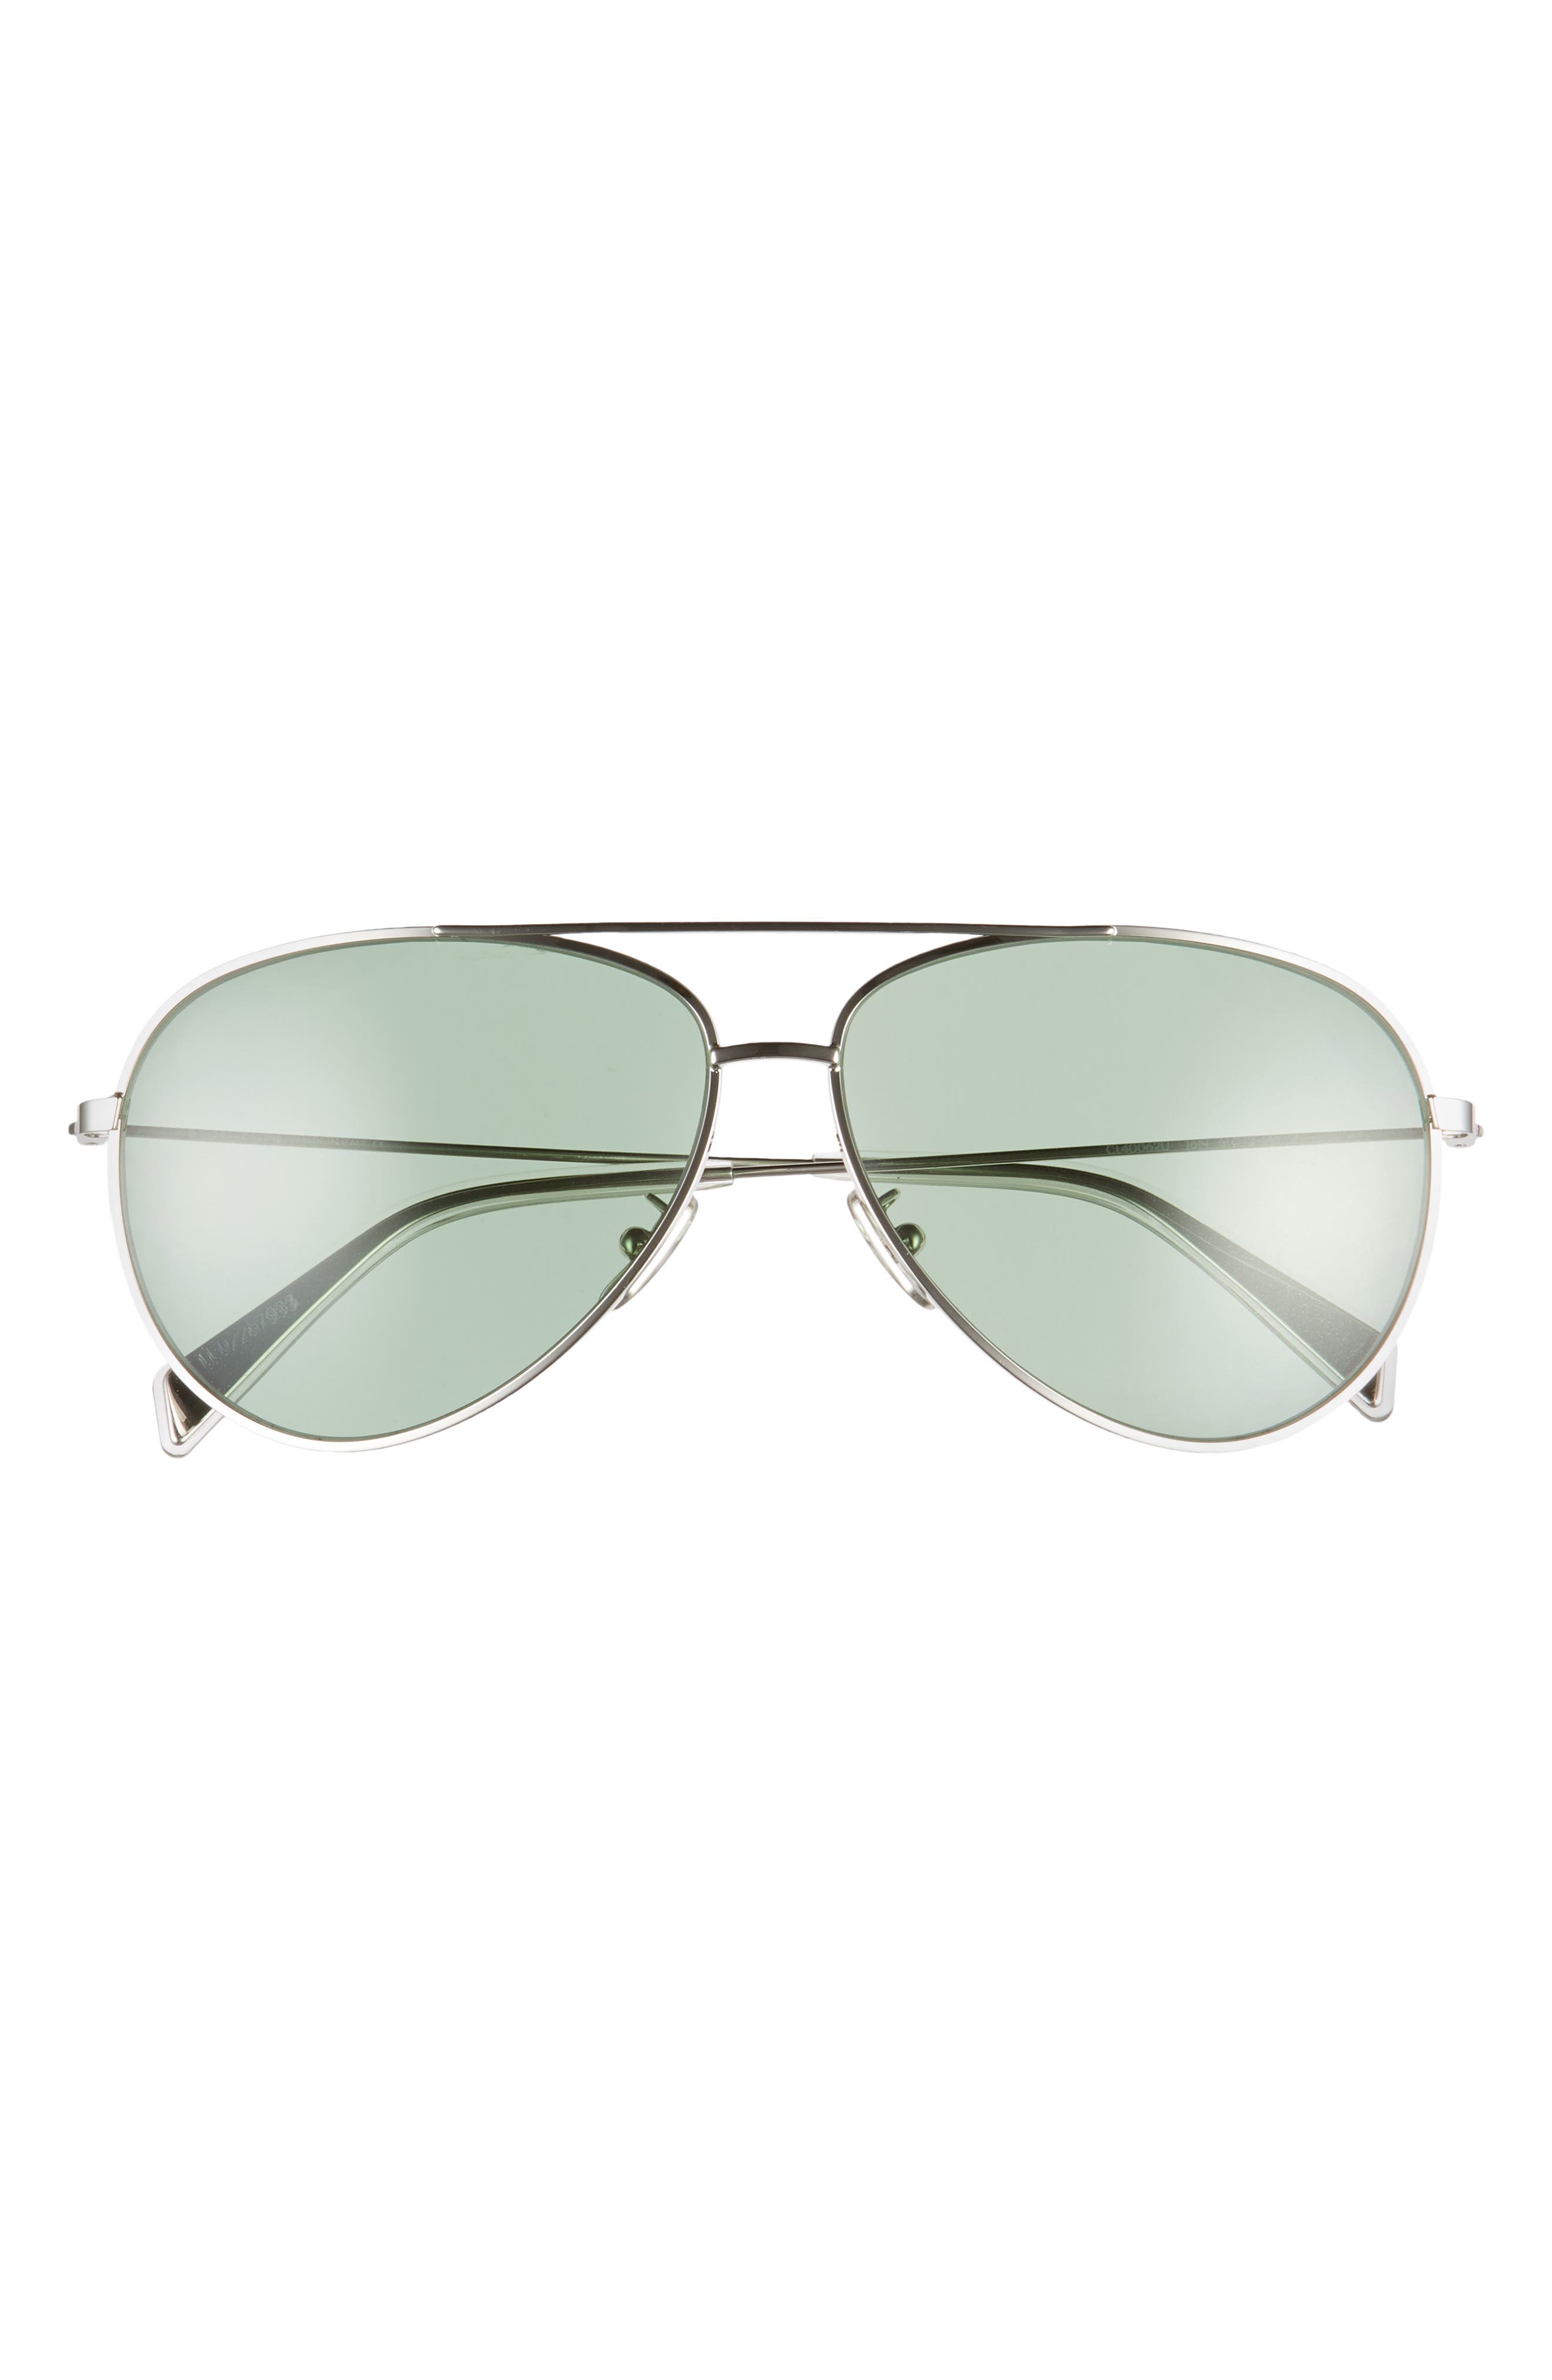 オンライン公式ストア Women S Celine 61mm Aviator Sunglasses Palladium Green Sale 仕入れ Thestatestreetgrill Com